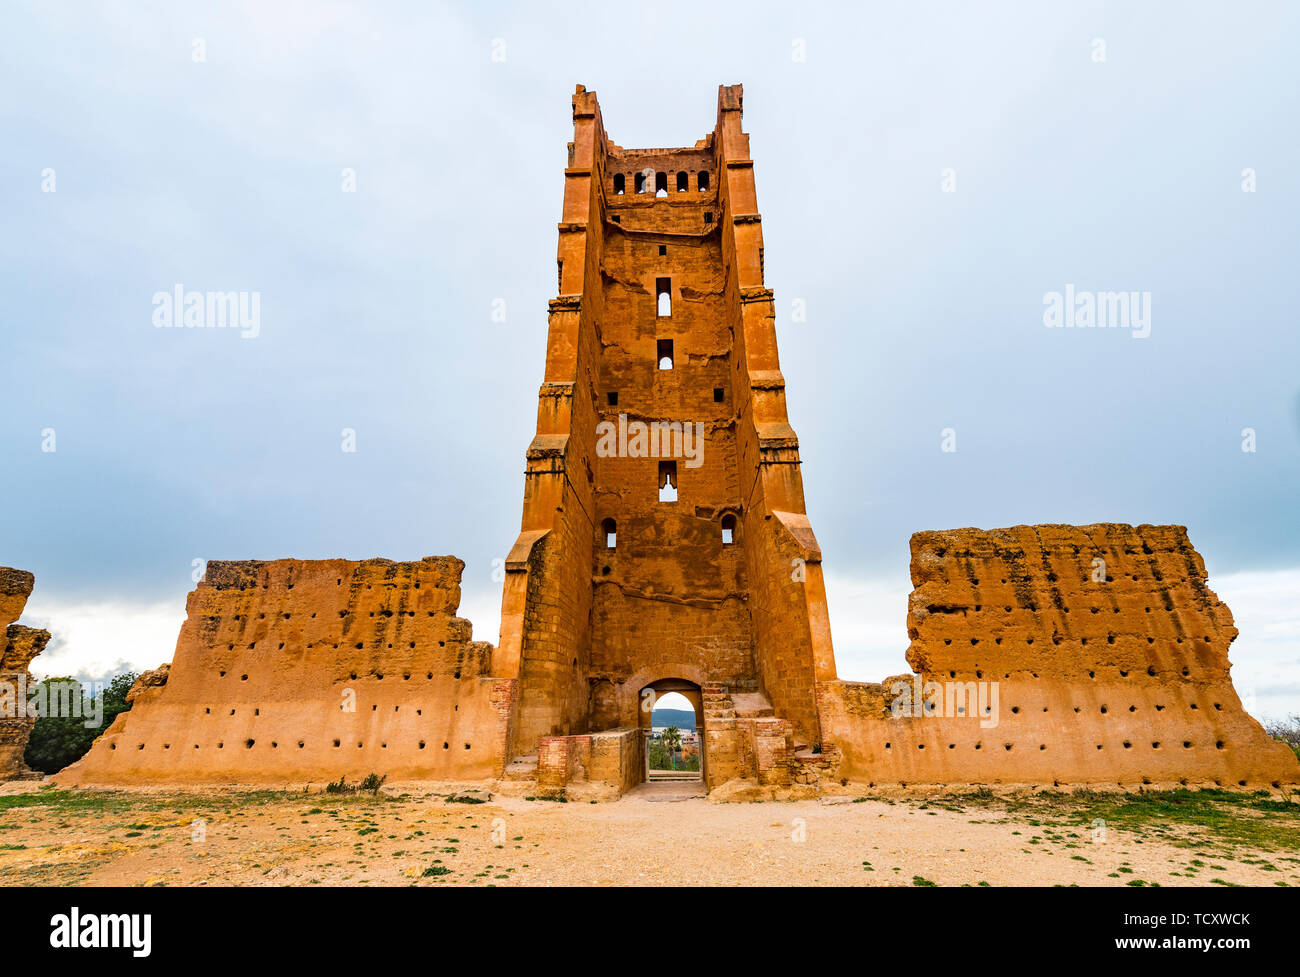 Mansourah Moschee, Mansourah schloss, Tlemcen, Algerien, Nordafrika, Afrika Stockfoto